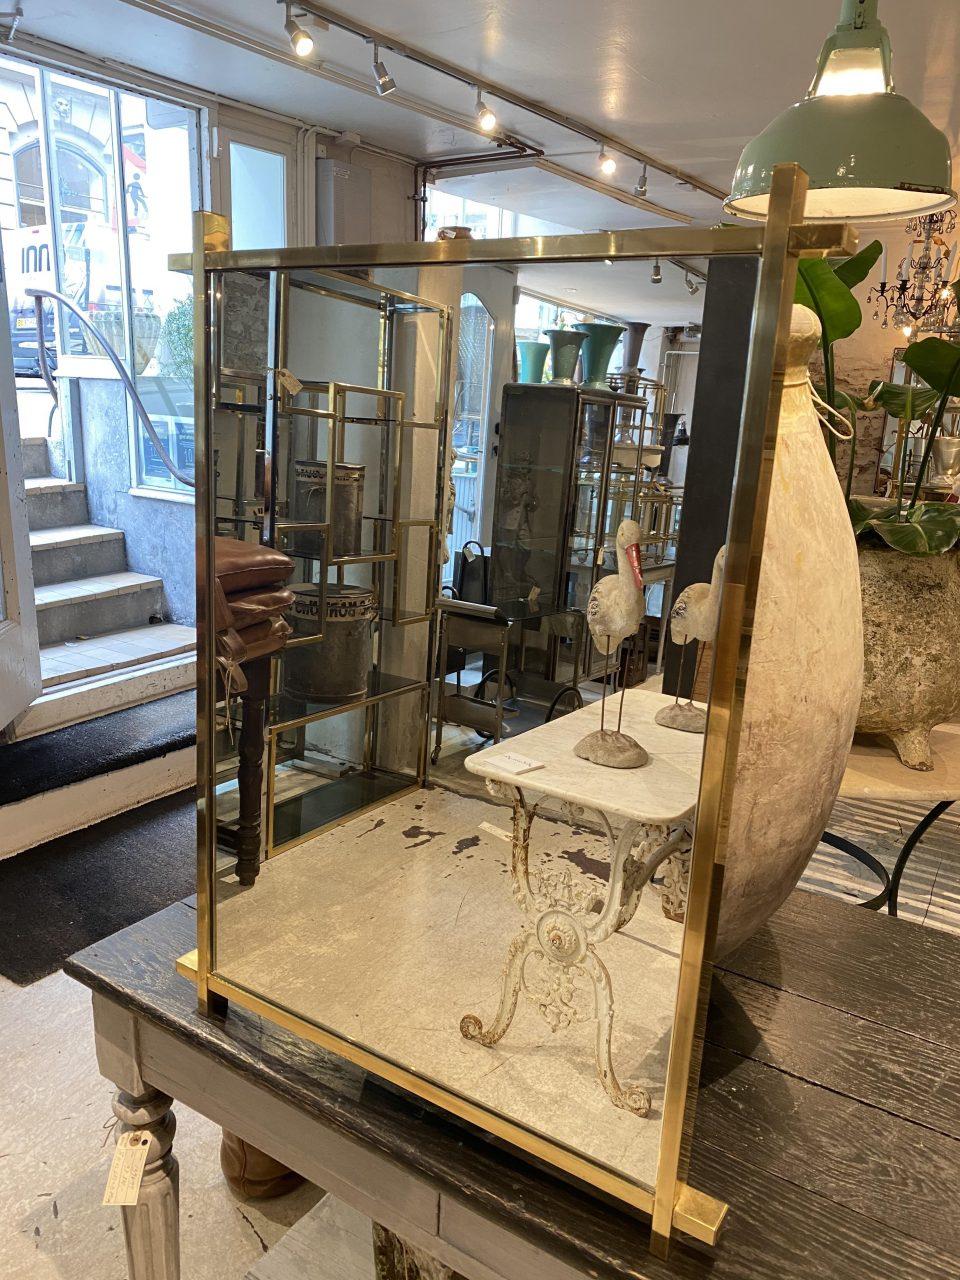 Miroir italien en laiton des années 1960, minimaliste et austère, d'une fabuleuse forme rectangulaire, avec un beau cadre large en laiton brillant avec de rares et élégants coins entrecroisés.

Miroir idéal pour un couloir/une entrée, au-dessus